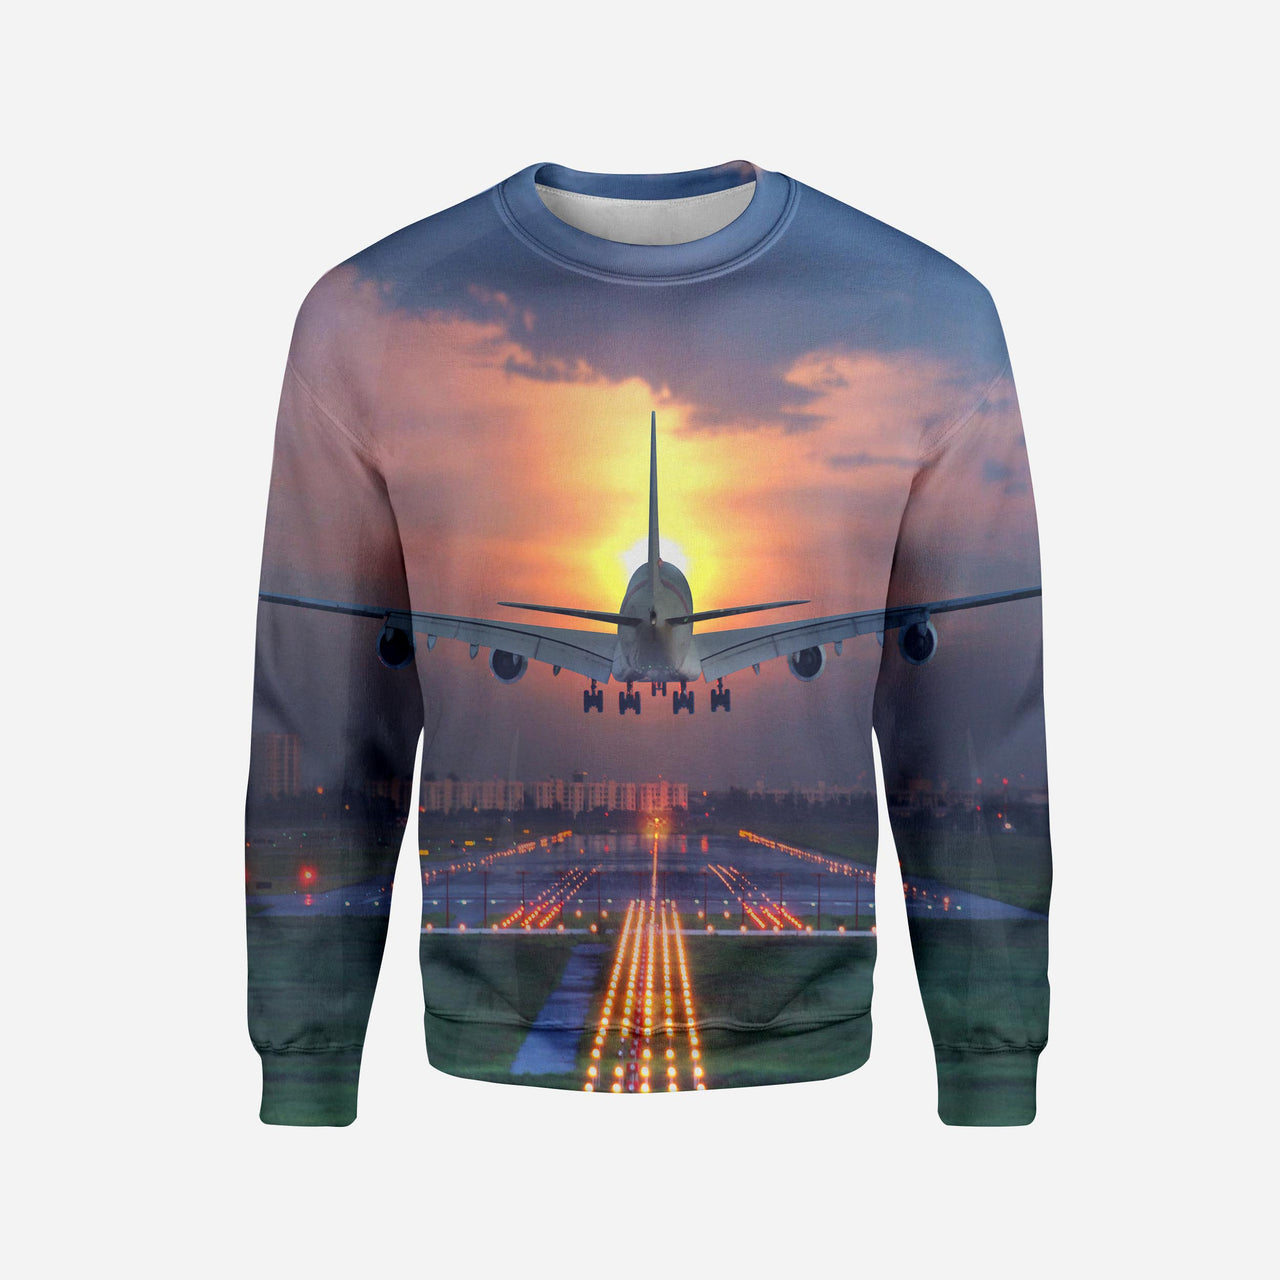 Super Boeing 747 Landing During Sunset Printed 3D Sweatshirts